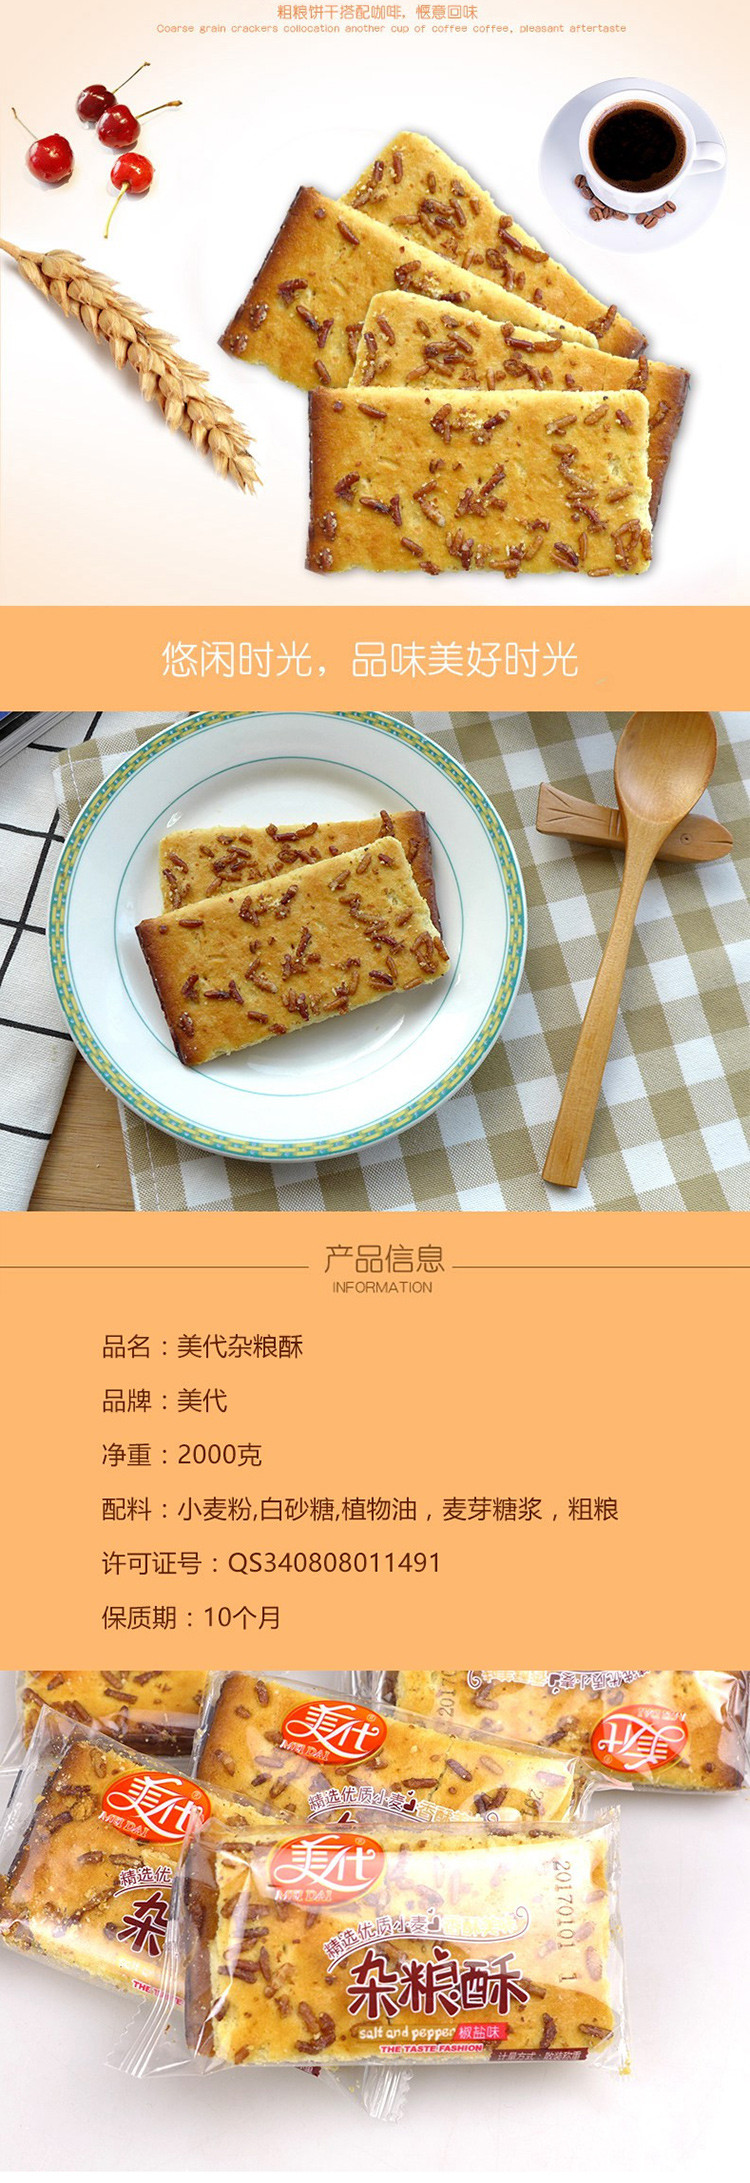 【邮乐新乡馆】美代杂粮酥4斤*1箱 香酥美味韧性饼干零食小吃